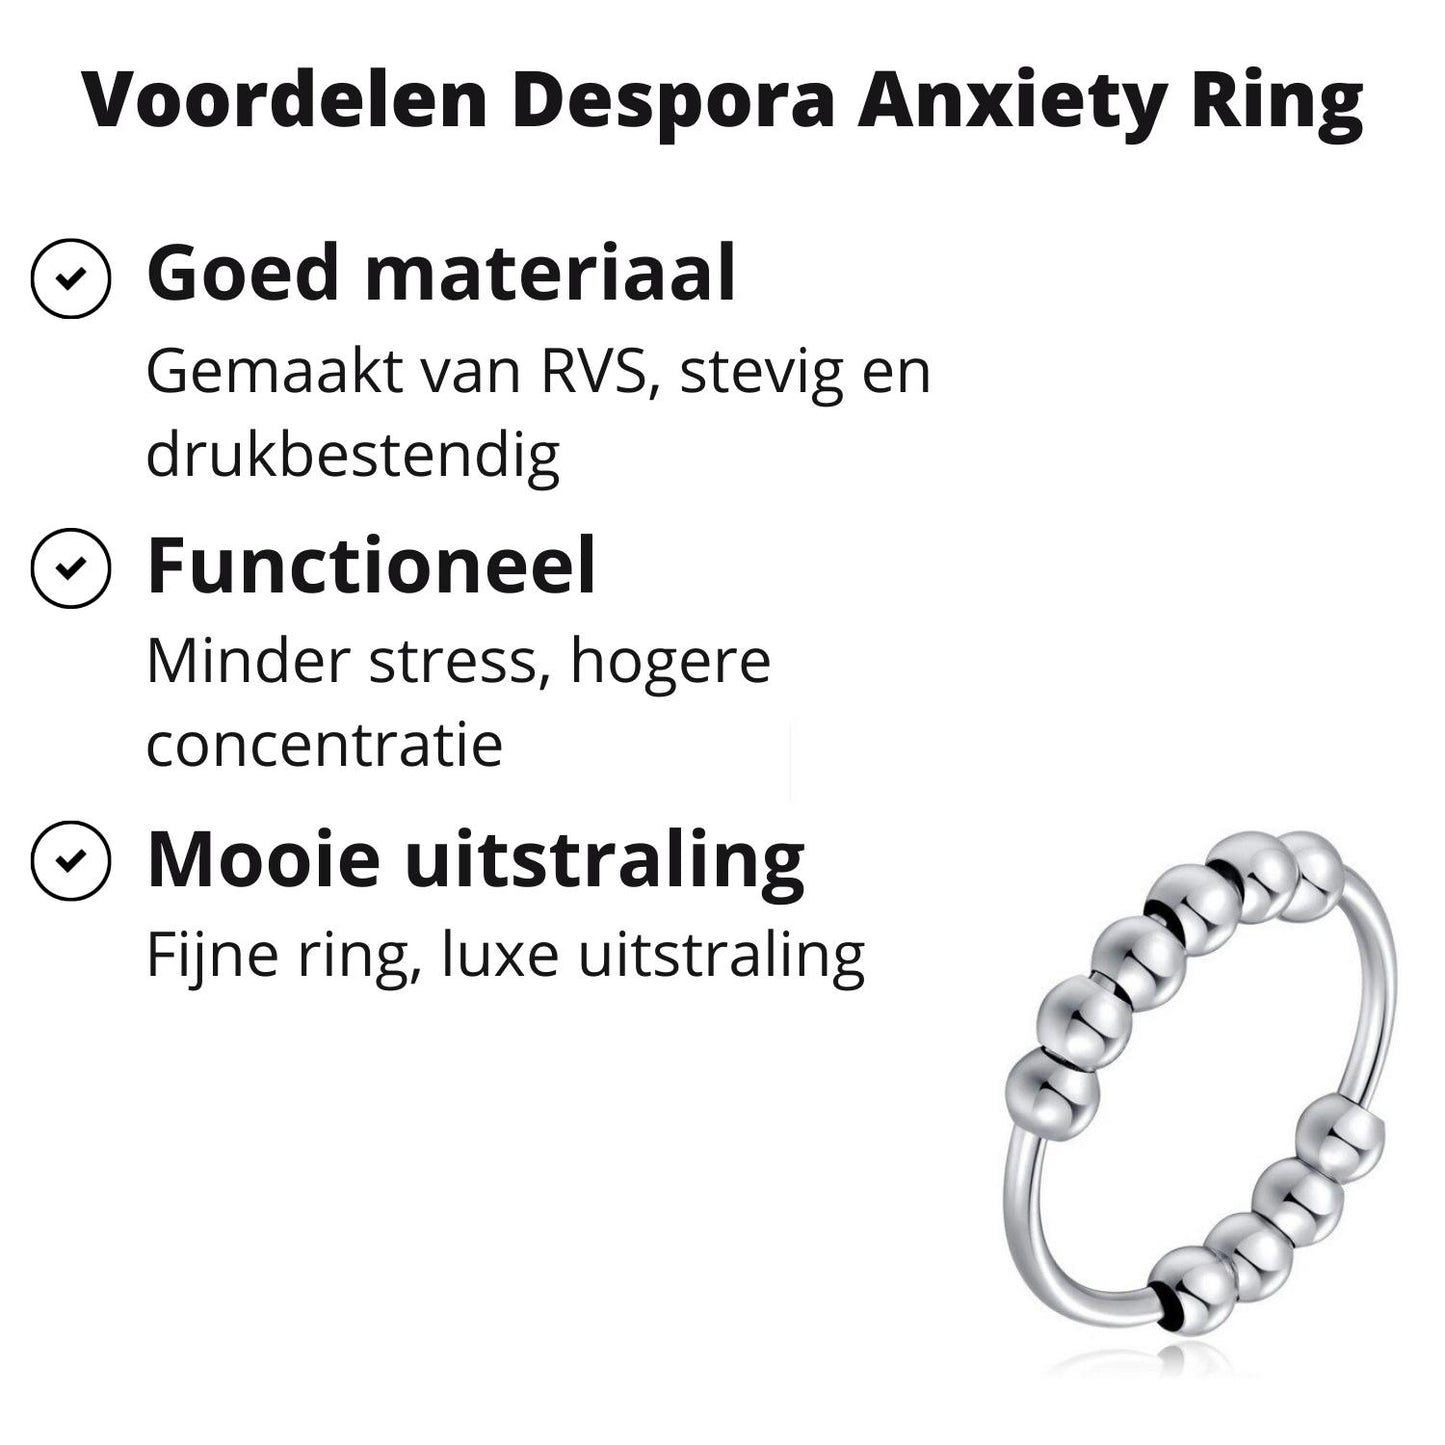 Anxiety Ring zilver kleurig (RVS) Voordelen